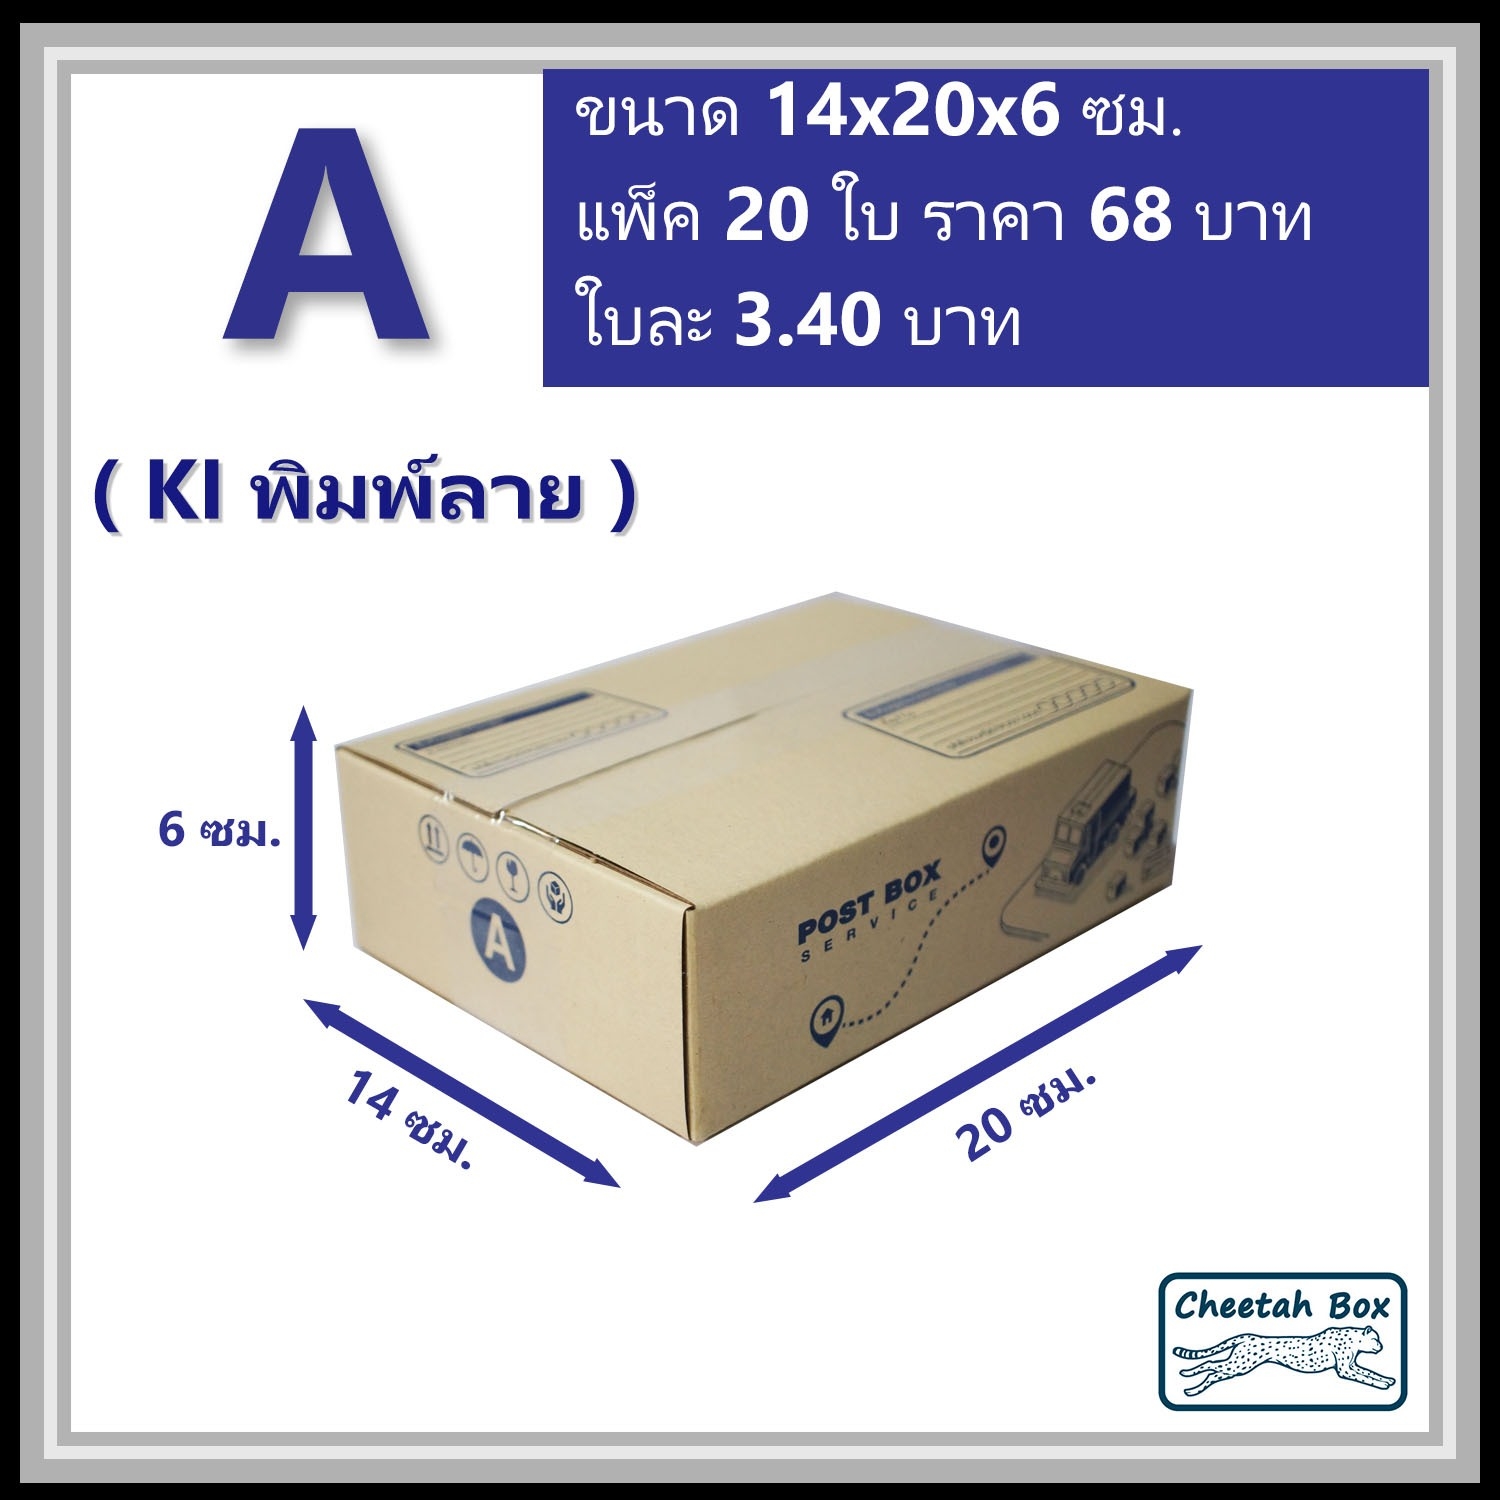 กล่องไปรษณีย์ A (Cheetah Box ขนาด 14*20*6 CM)